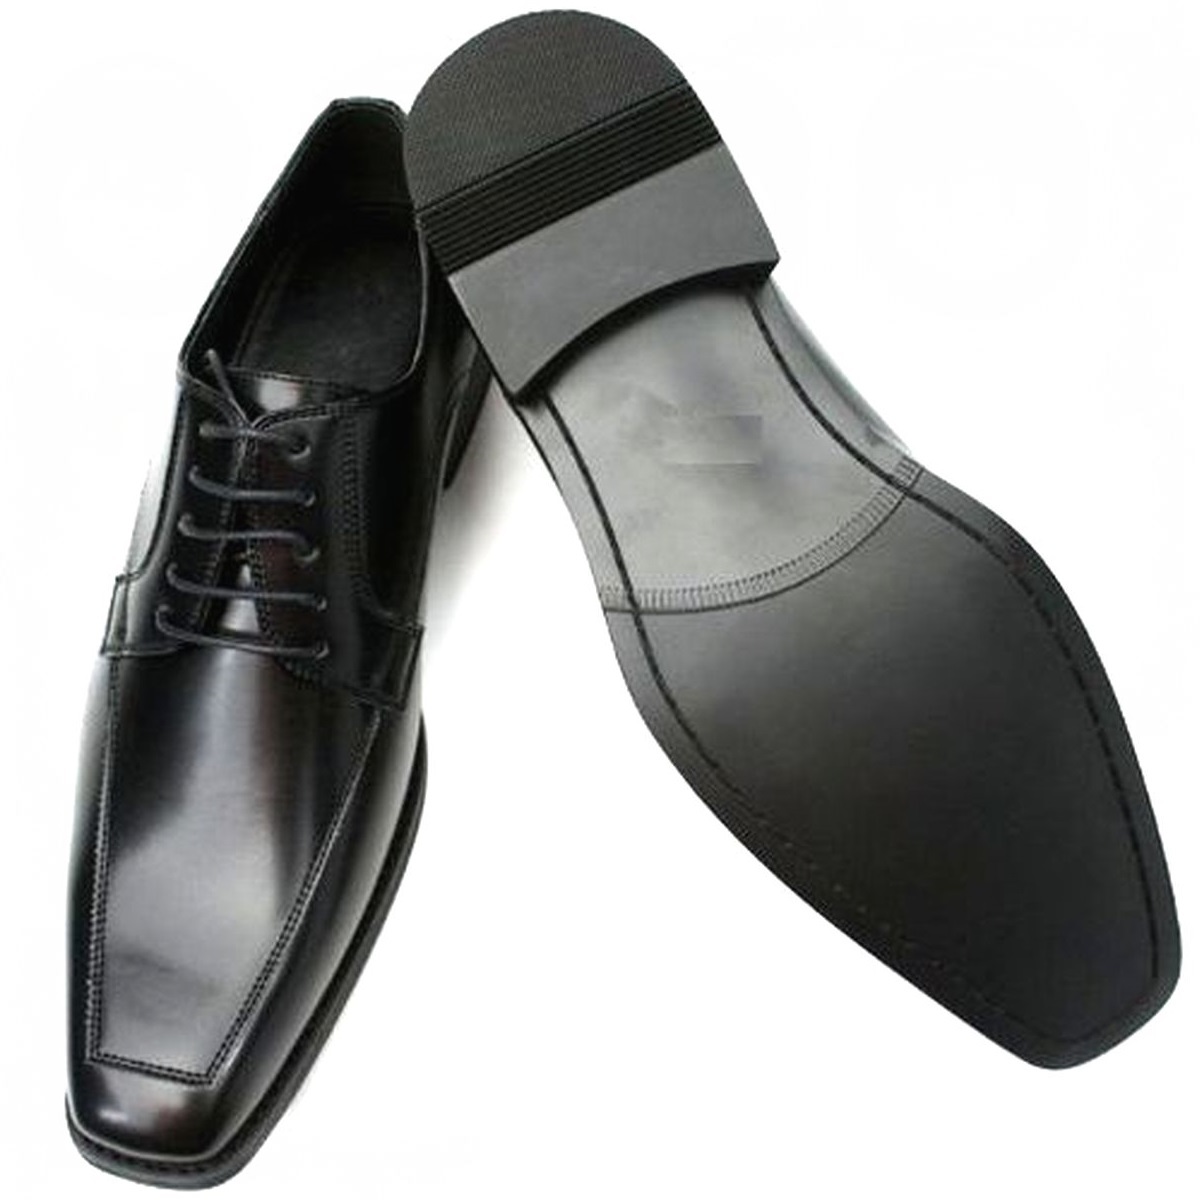 黒 25.5cm お手入れ簡単 雨に強い合皮ビジネスシューズ スタイリッシュ紳士靴 ゆったり幅広 某有名靴メーカー同工場制作 本州送料無料 101_画像7